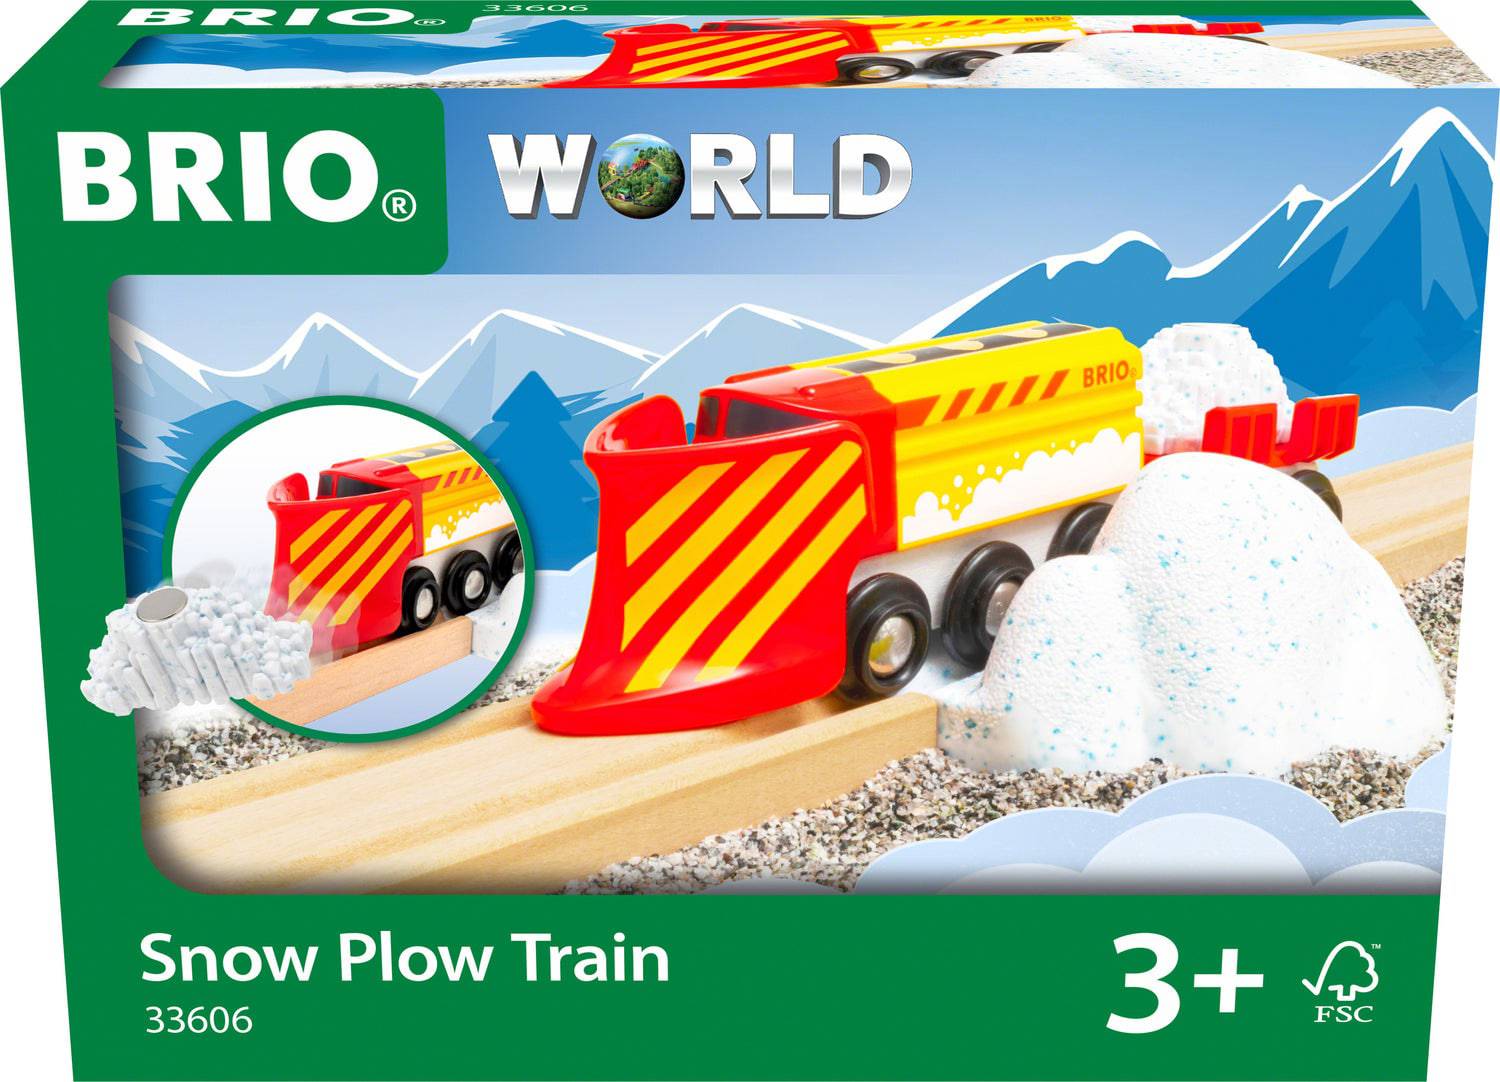 Snow Plow Train - A Child's Delight